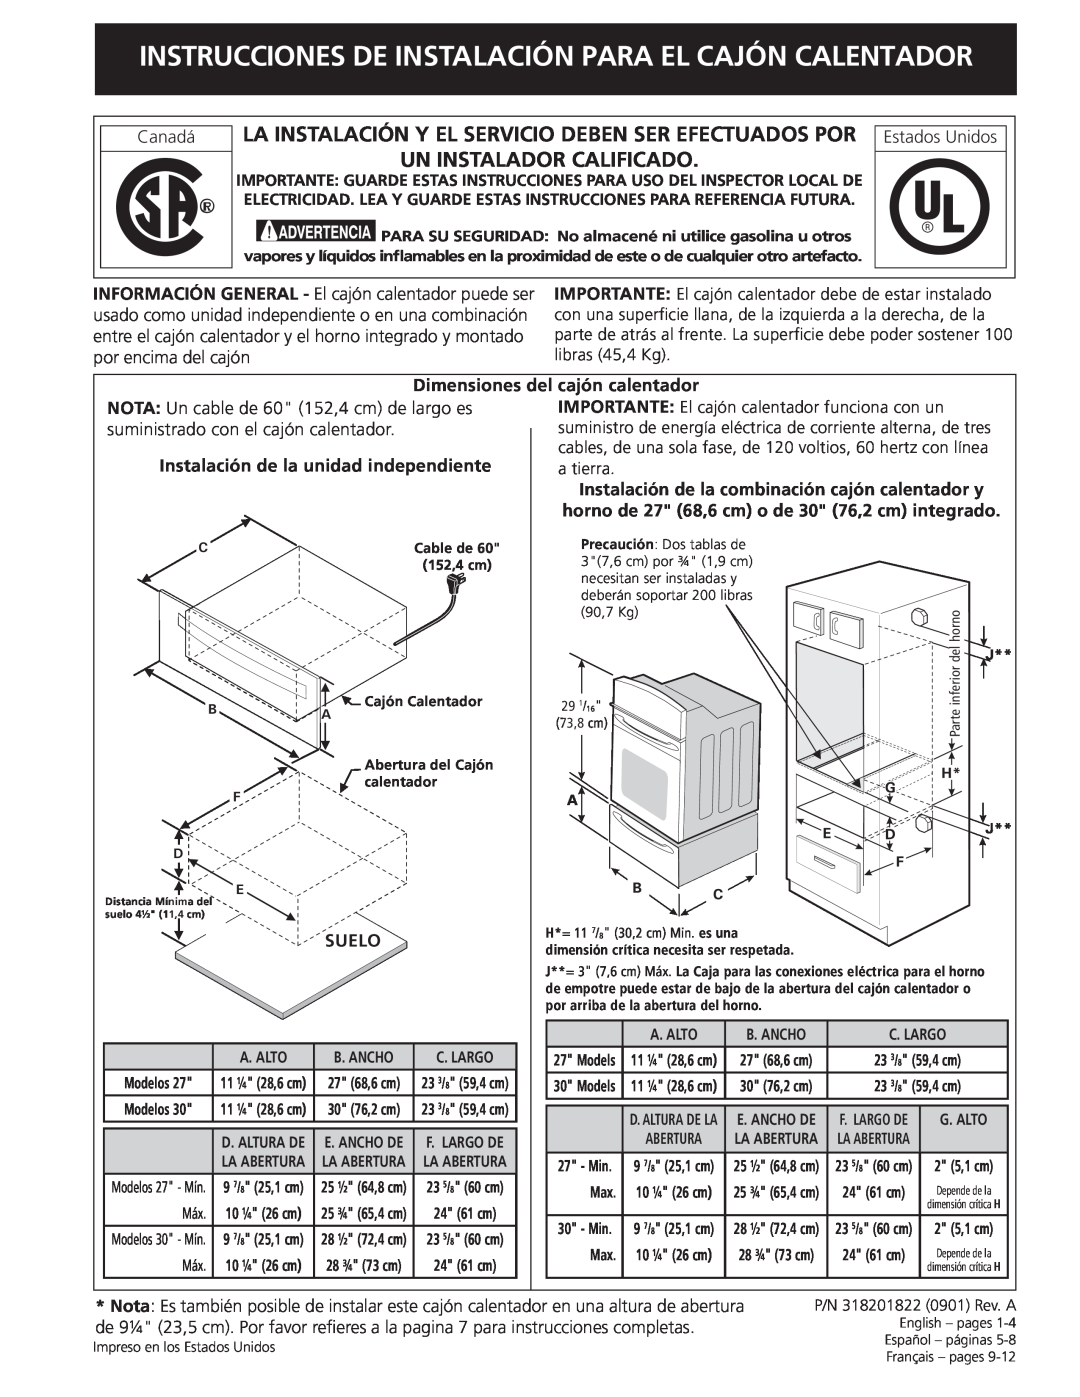 Frigidaire 318201822 installation instructions Un Instalador Calificado 